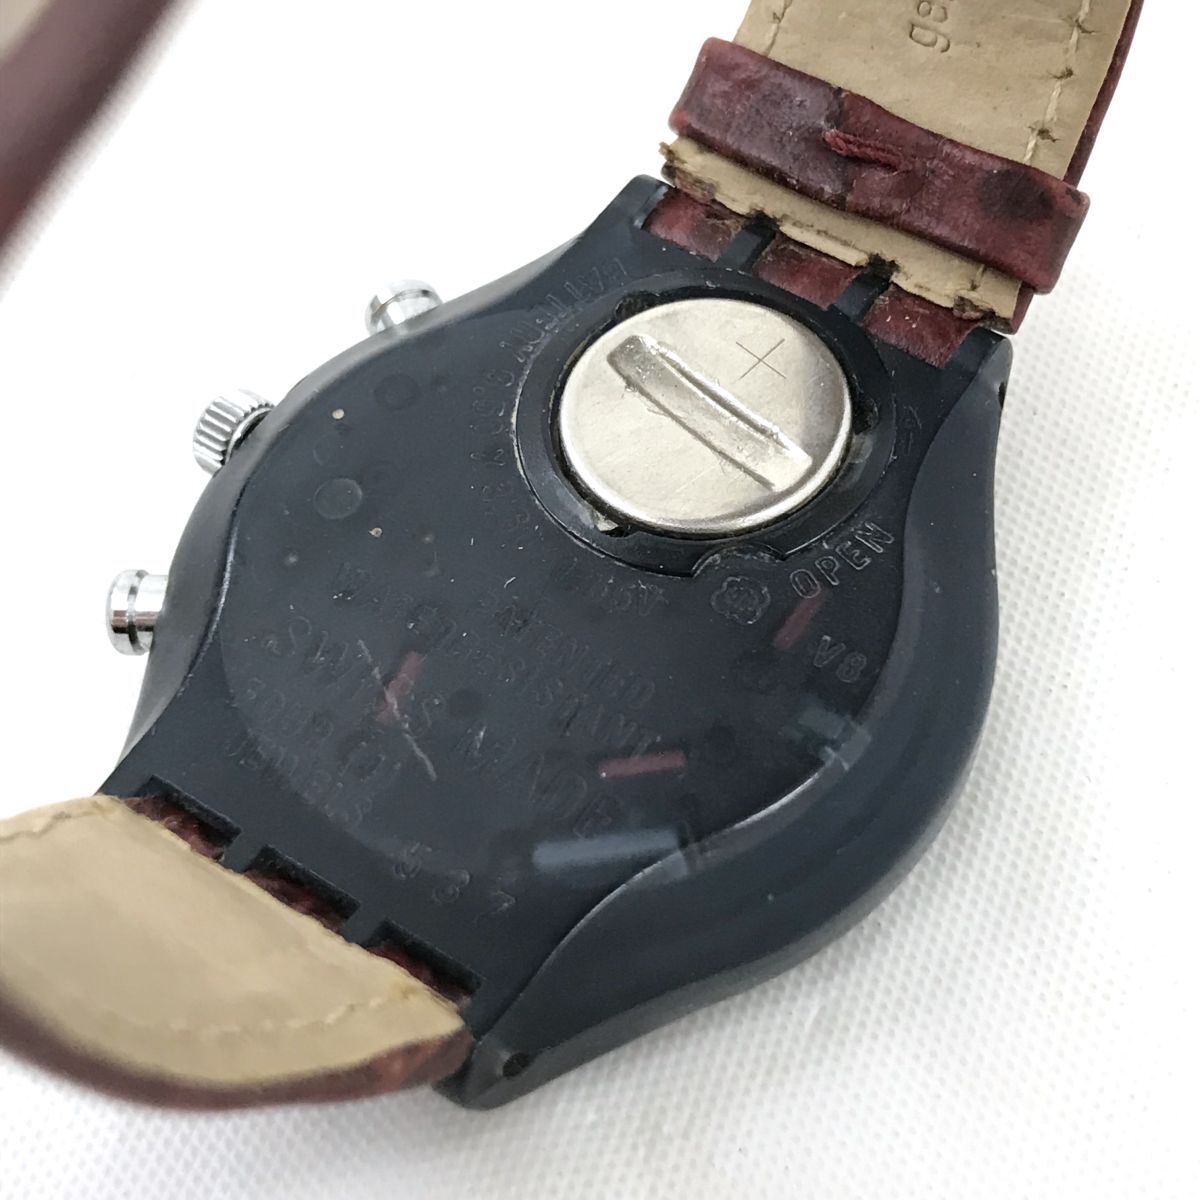 Swatch Swatch наручные часы кварц хронограф коллекция collector модный .. хороший casual легкий батарейка заменен рабочее состояние подтверждено 